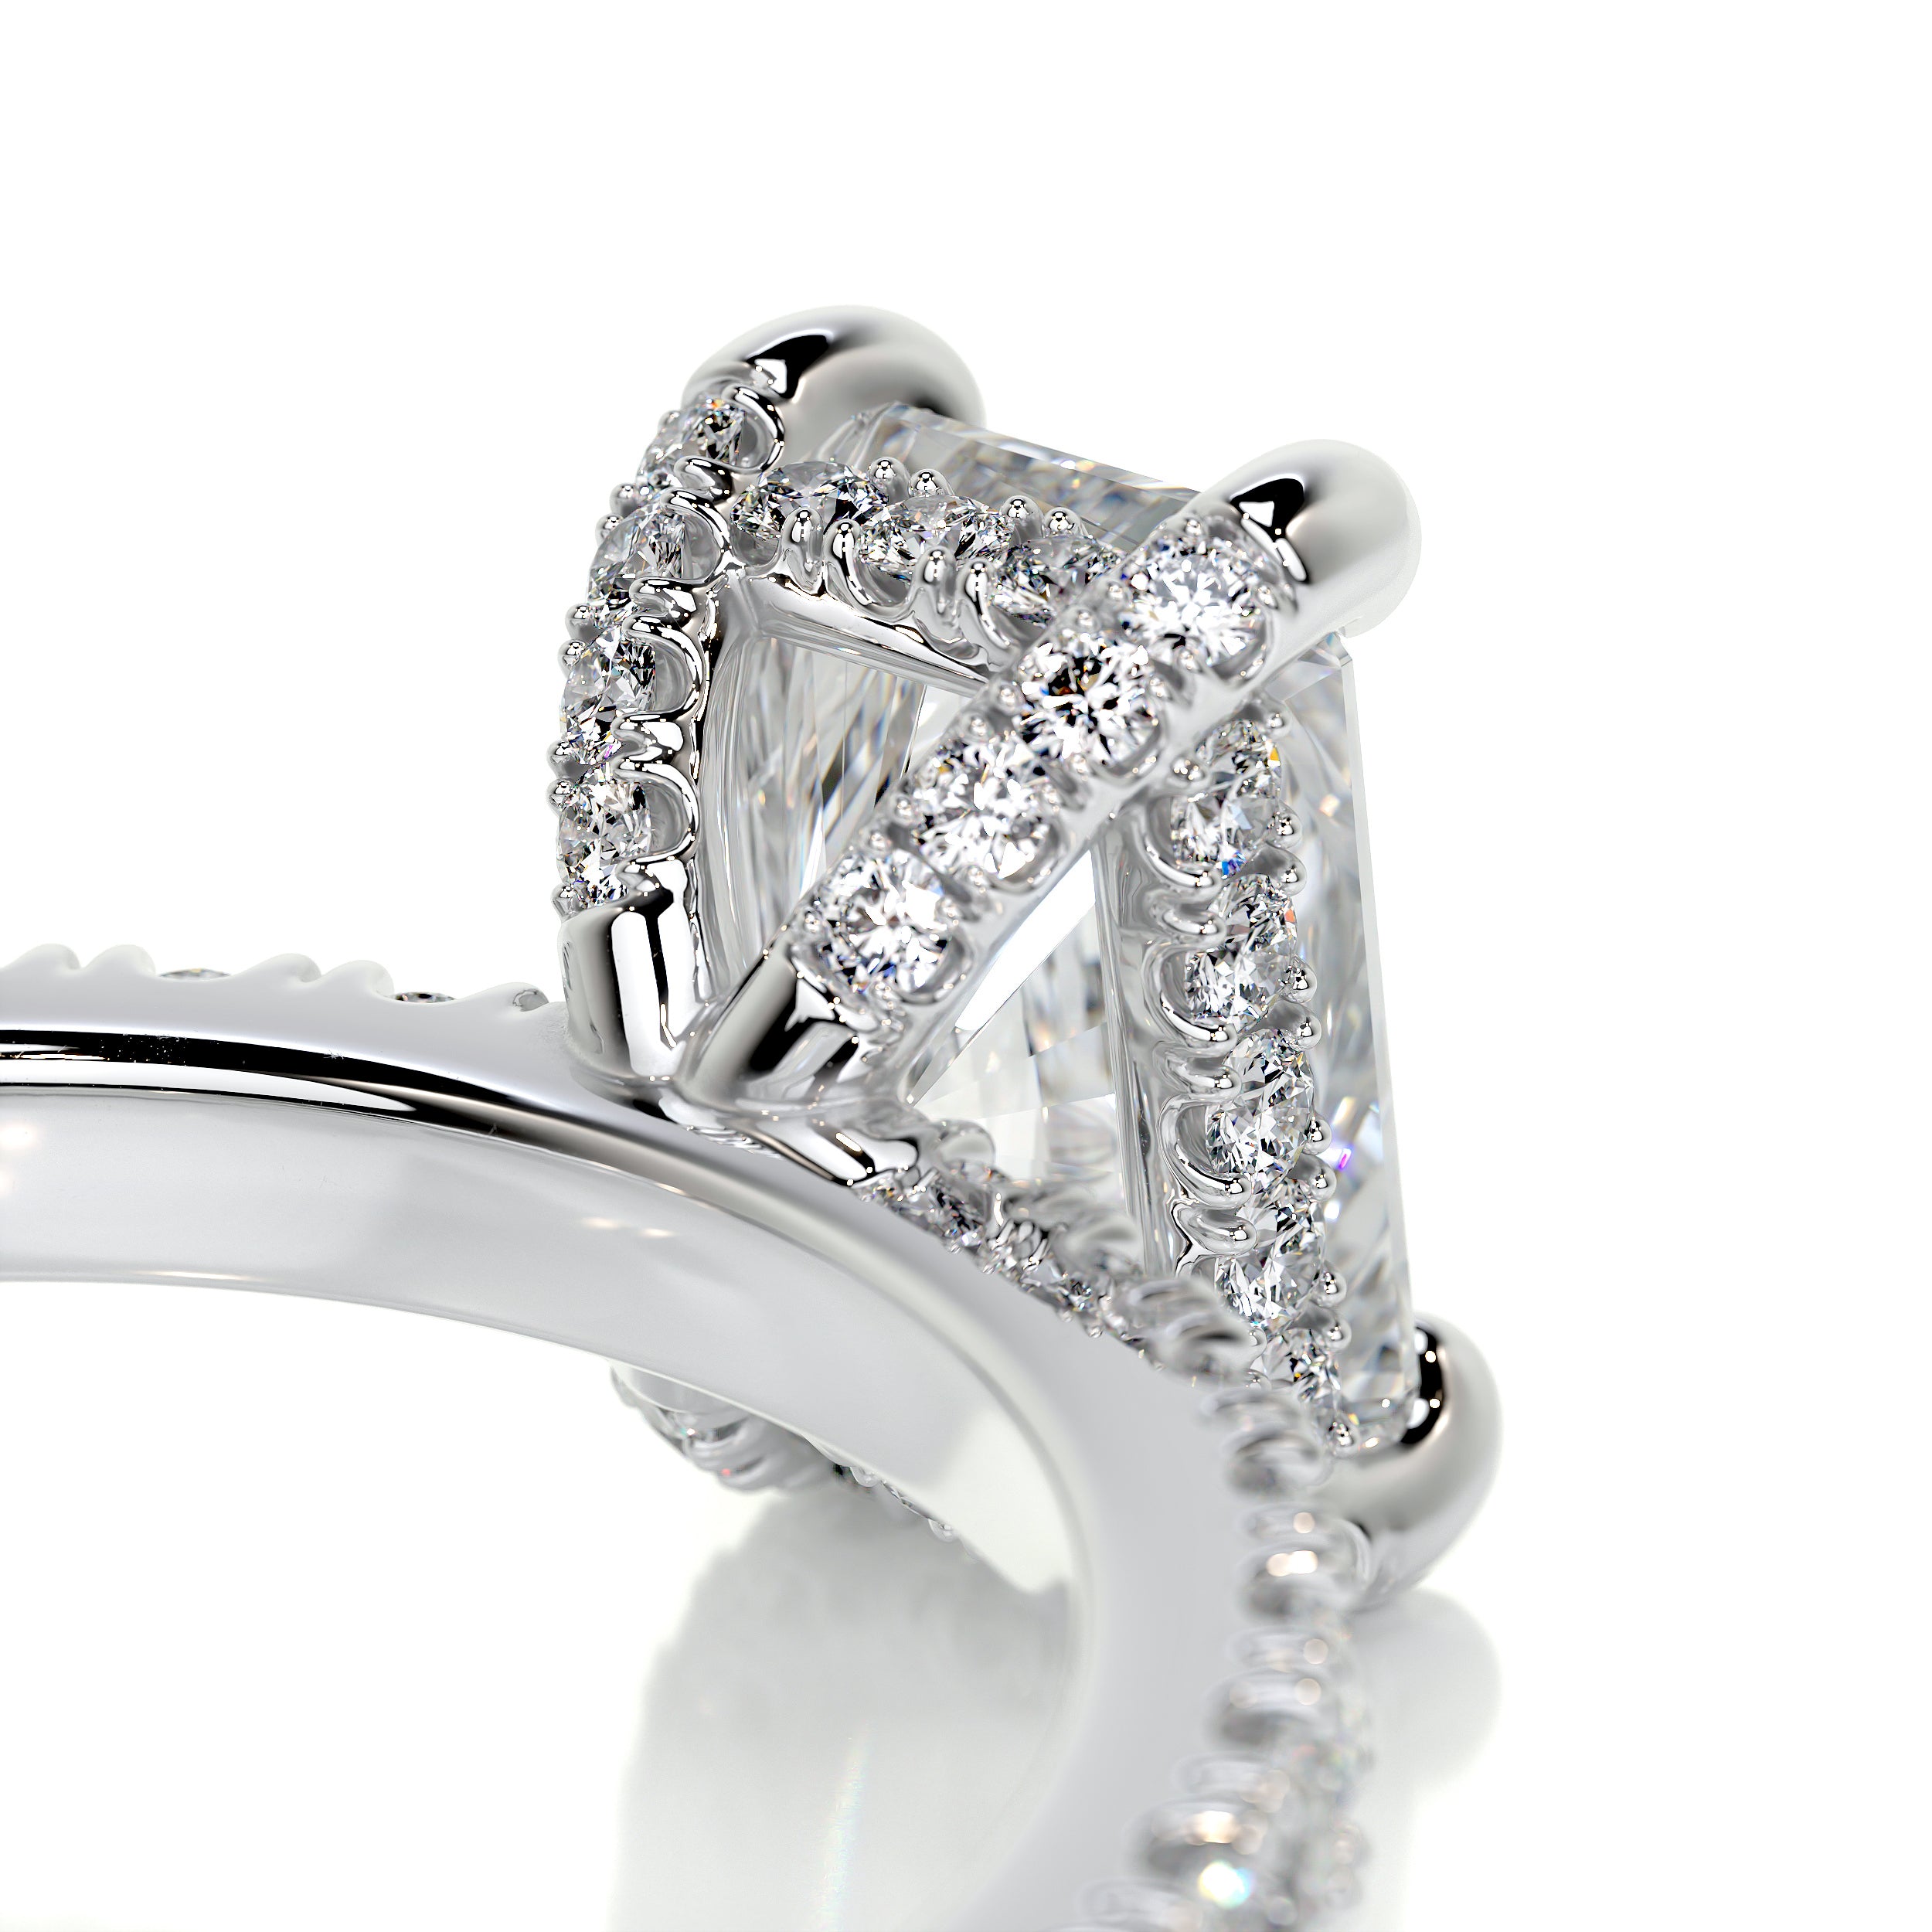 Deborah Diamond Engagement Ring   (1.5 Carat) -18K White Gold